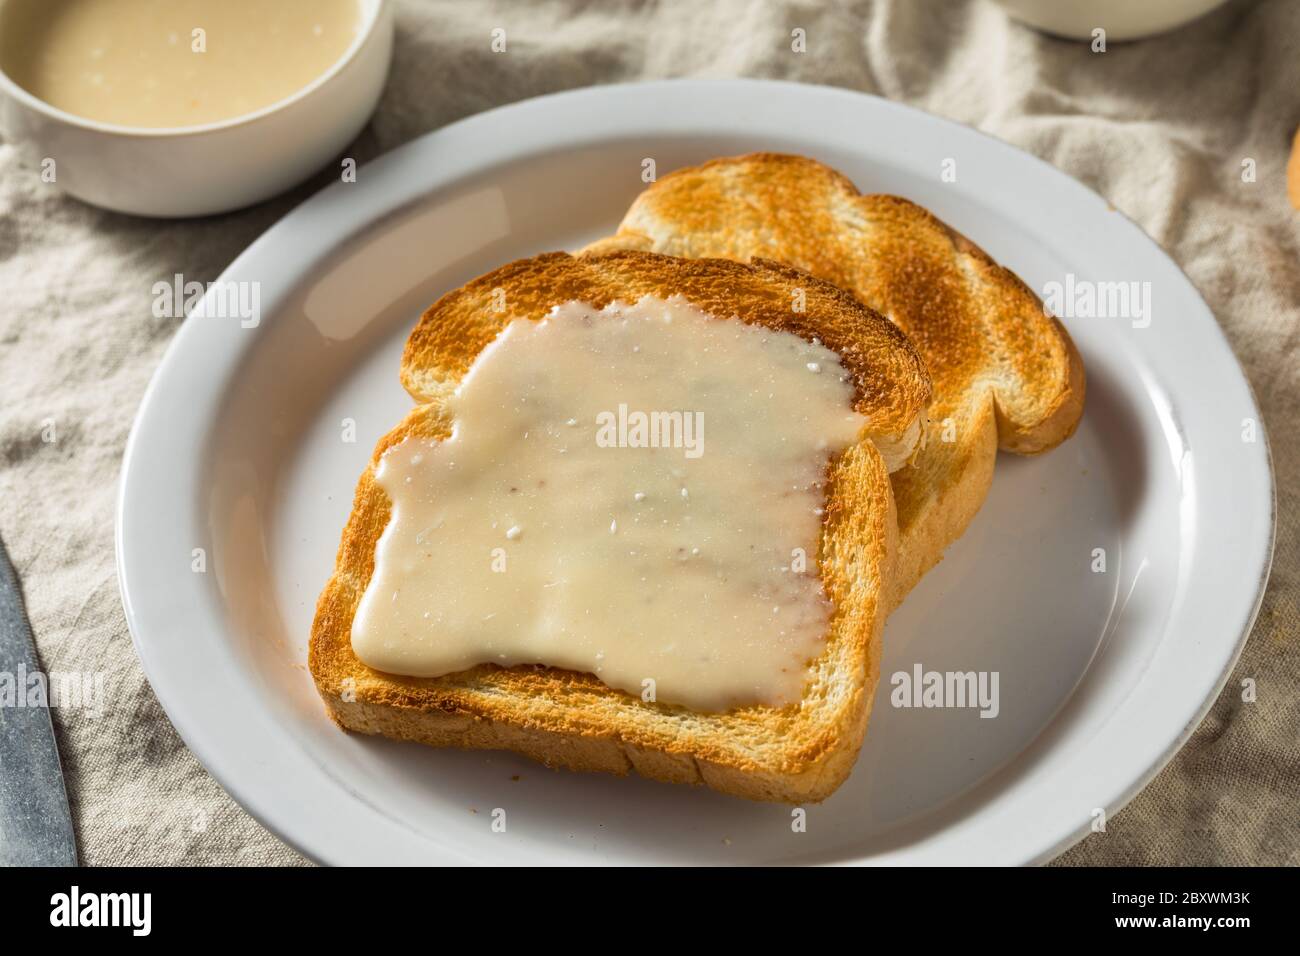 Sirop d'érable maison sur toast prêt à manger Banque D'Images